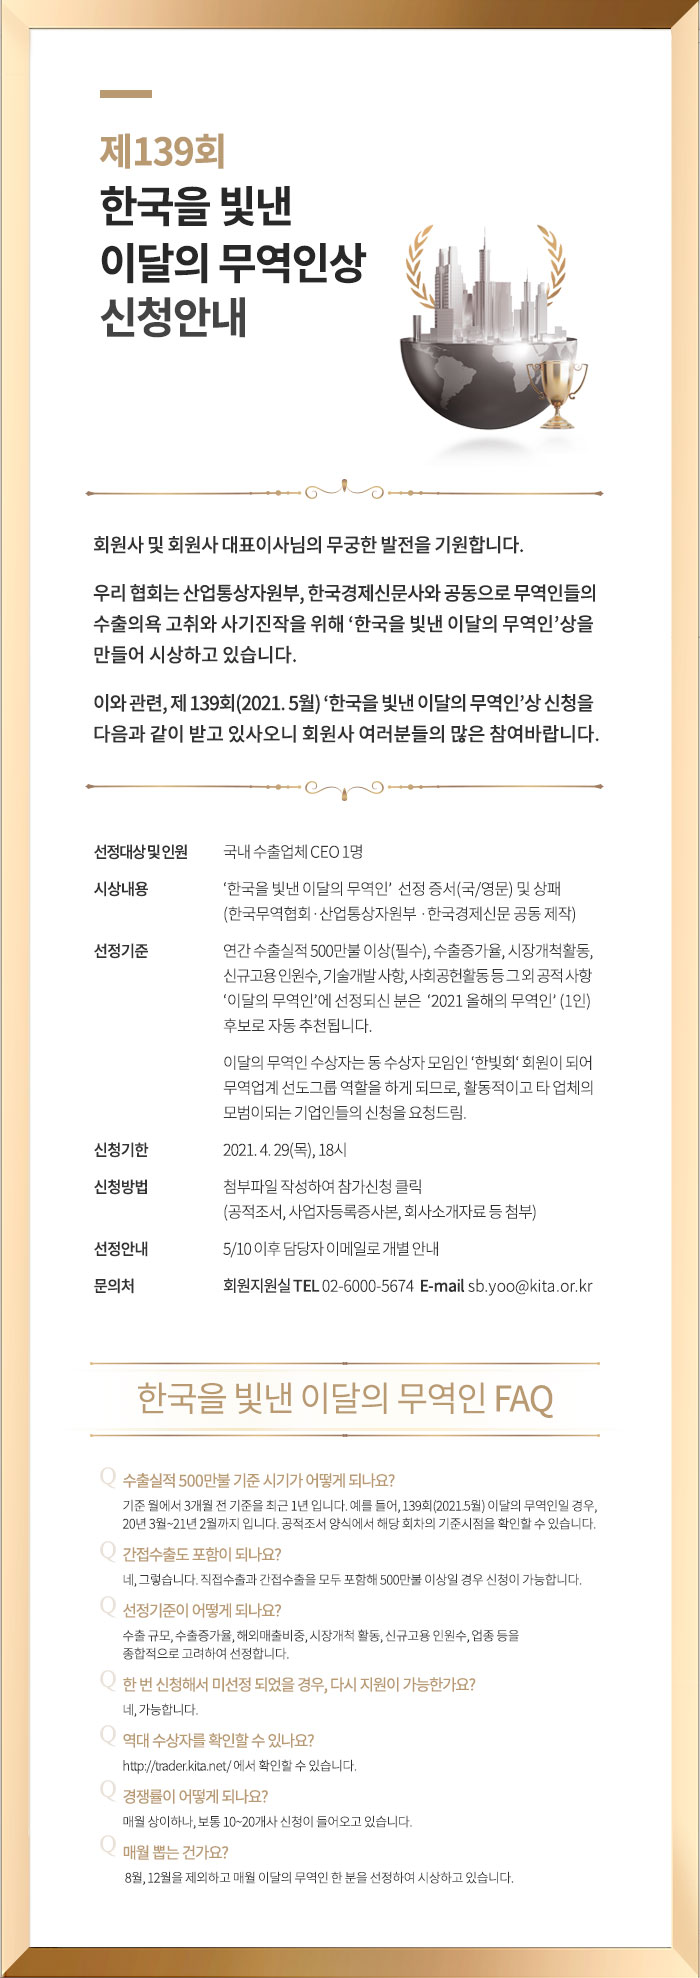 제139회 한국을 빛낸 이달의 무역인상 신청안내